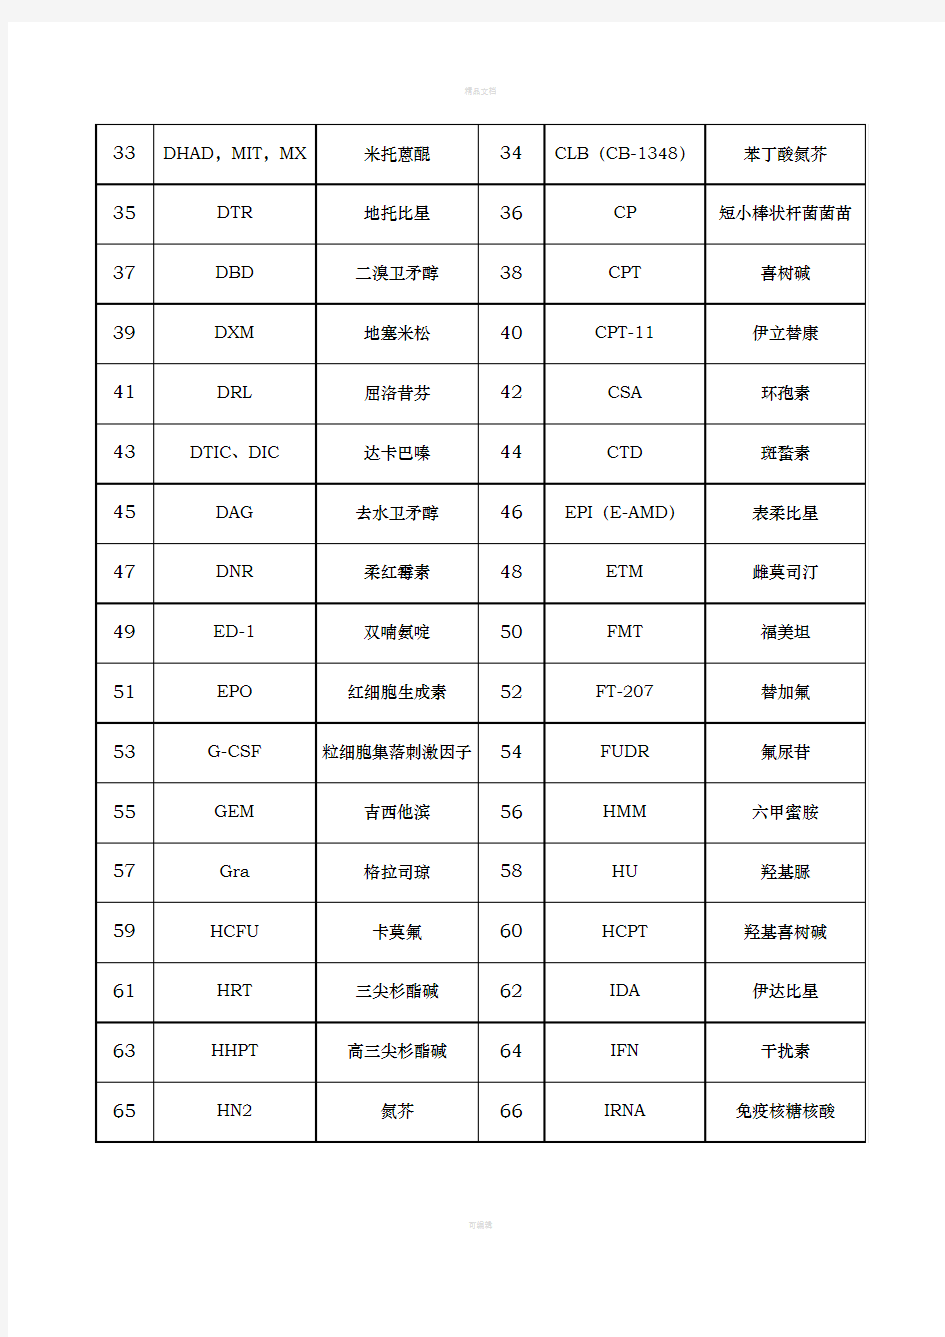 常见抗肿瘤药的外文缩写和中文对照表